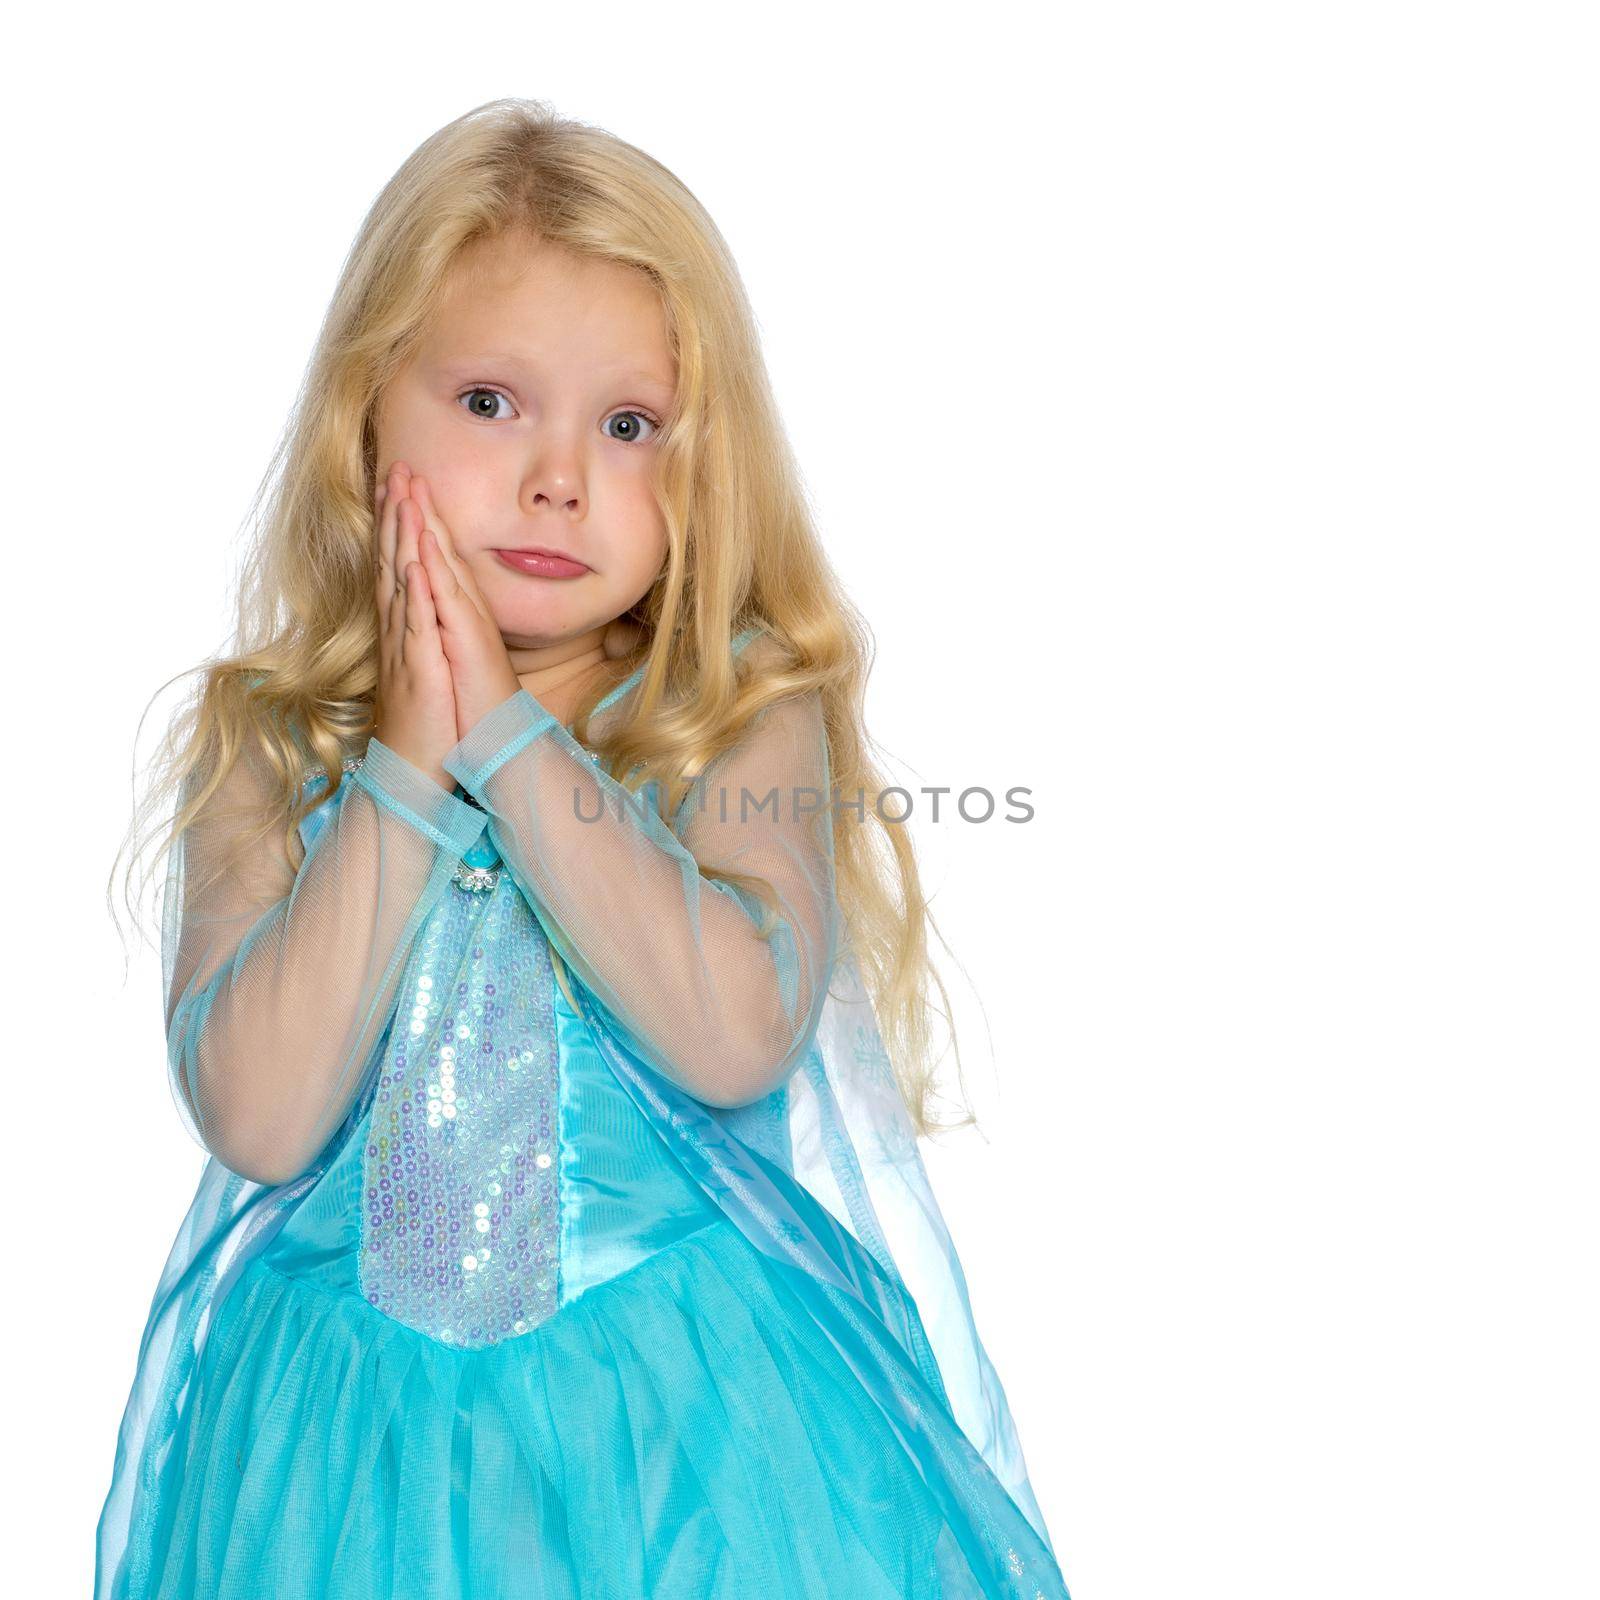 The little girl folded her hands around her face. by kolesnikov_studio